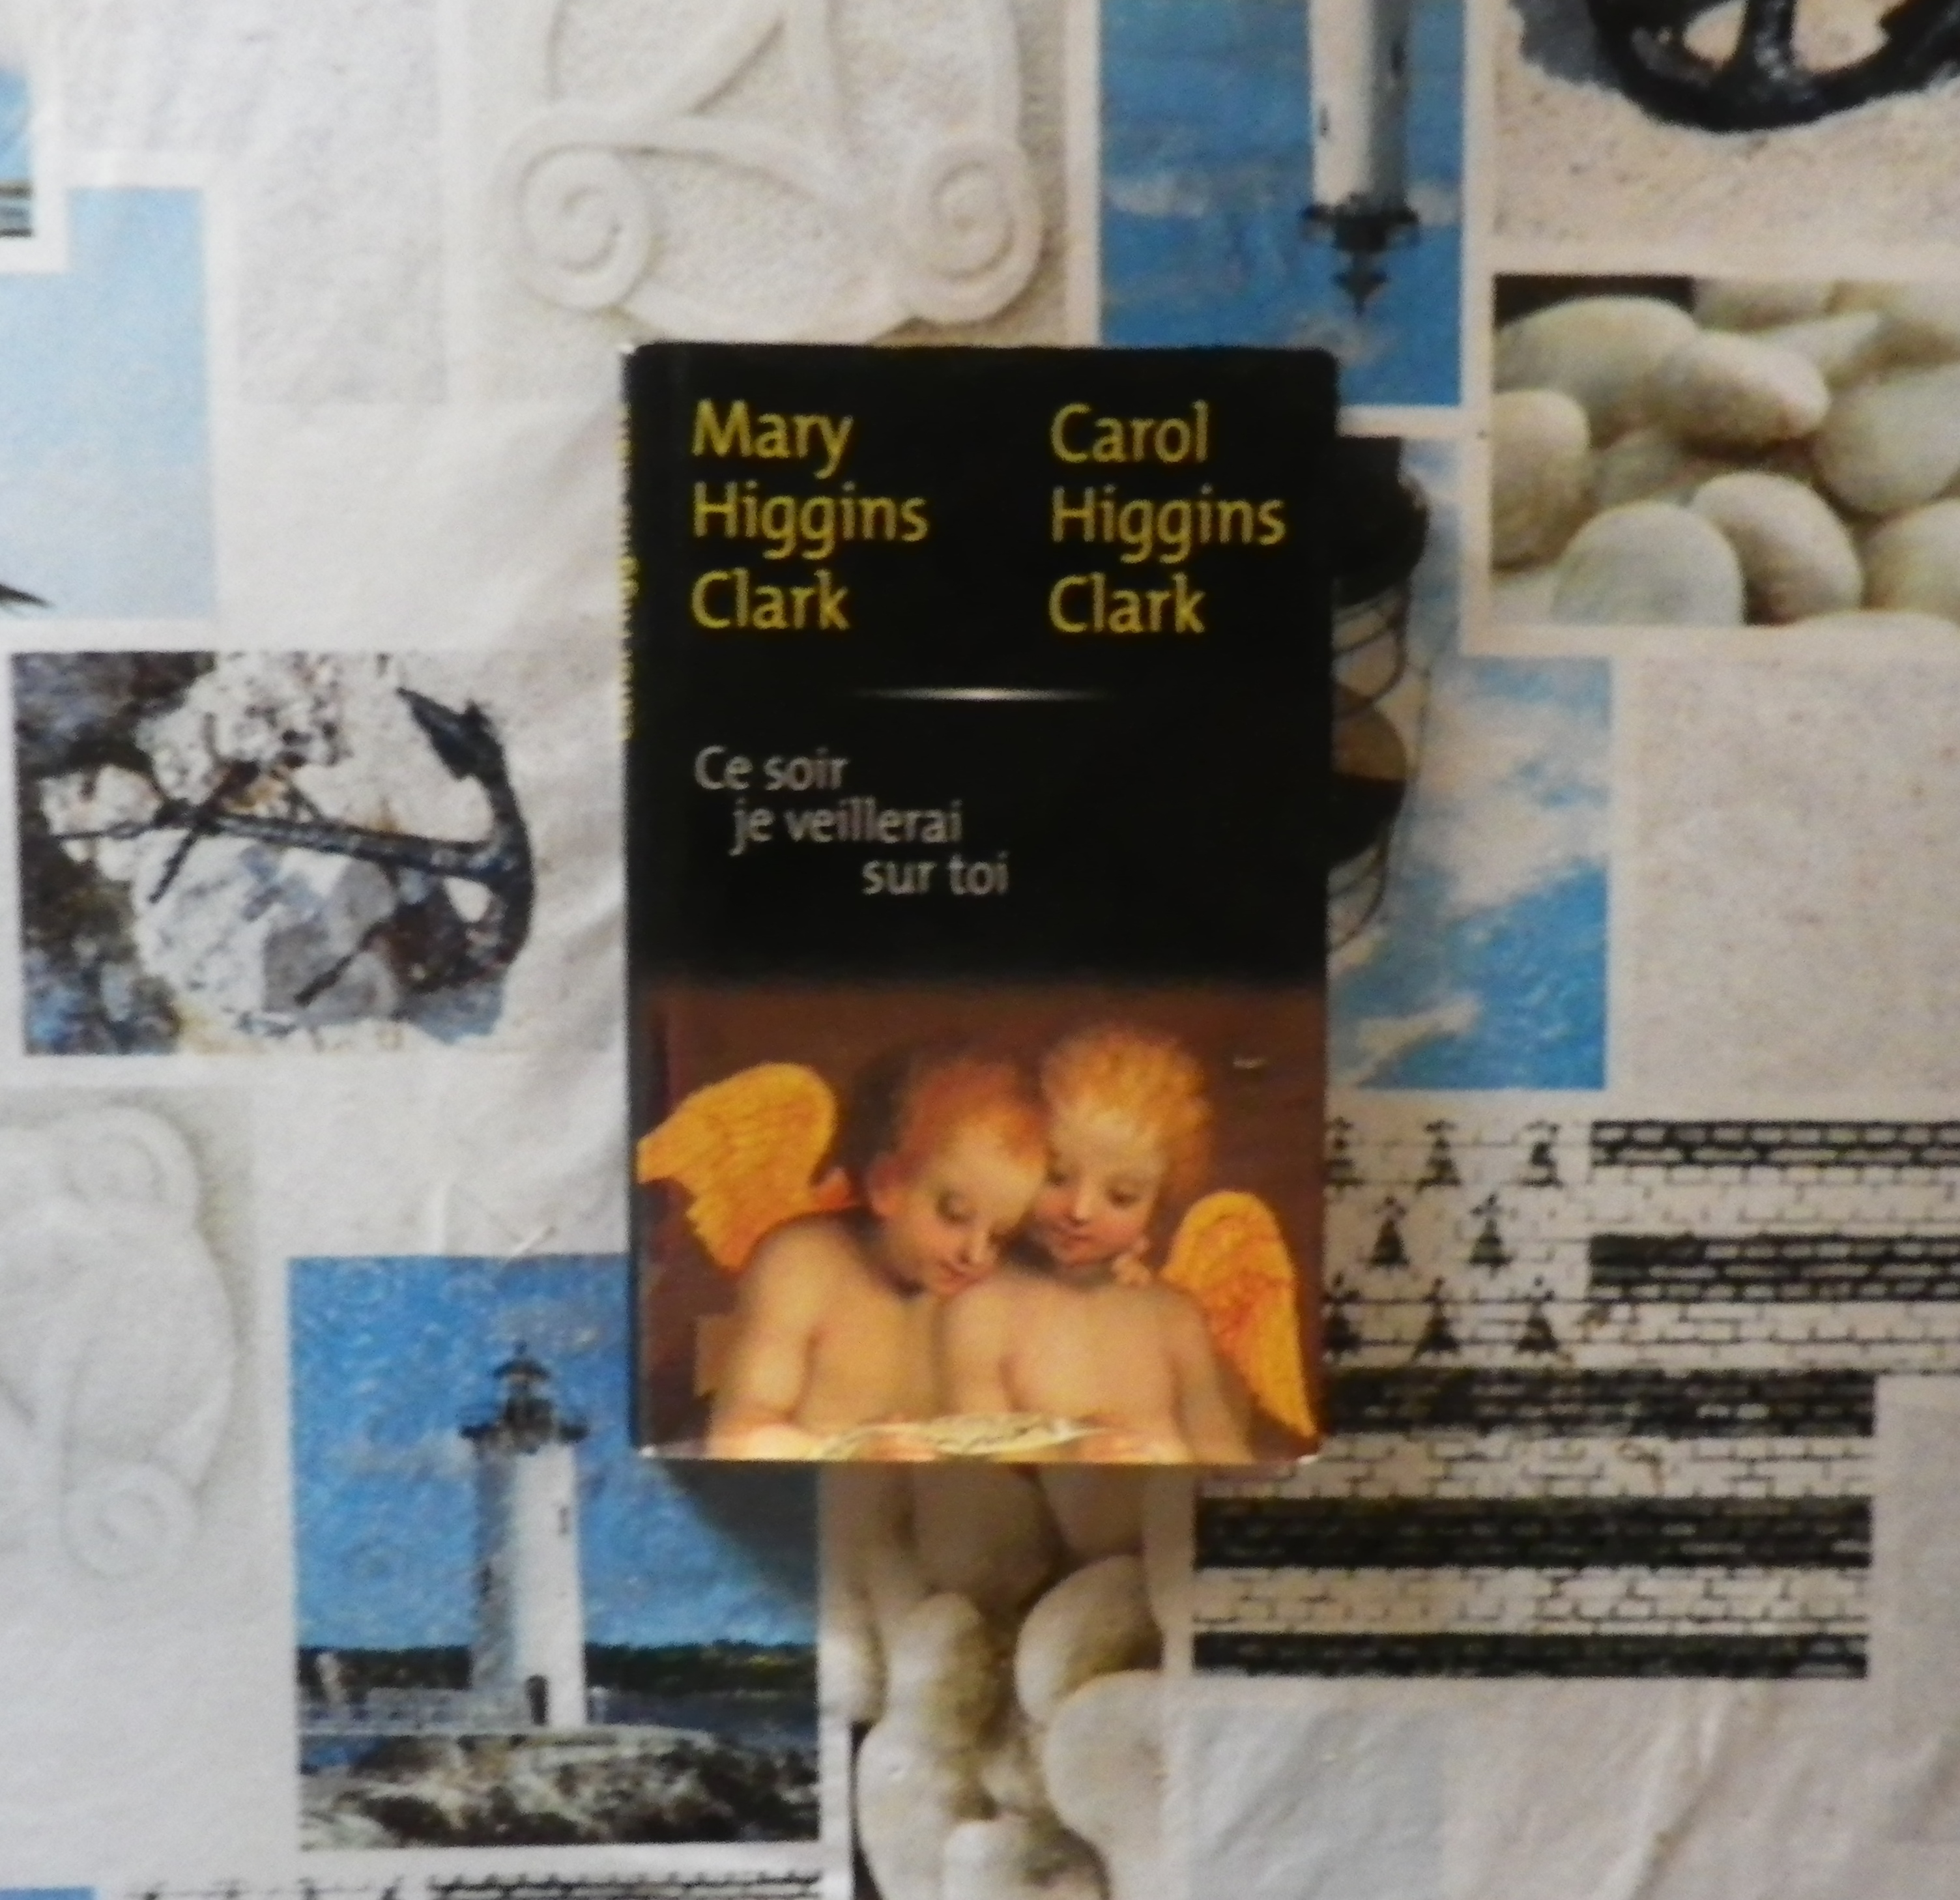 CE SOIR JE VEILLERAI SUR TOI Mary et Carol Higgins Clark Livres et BD